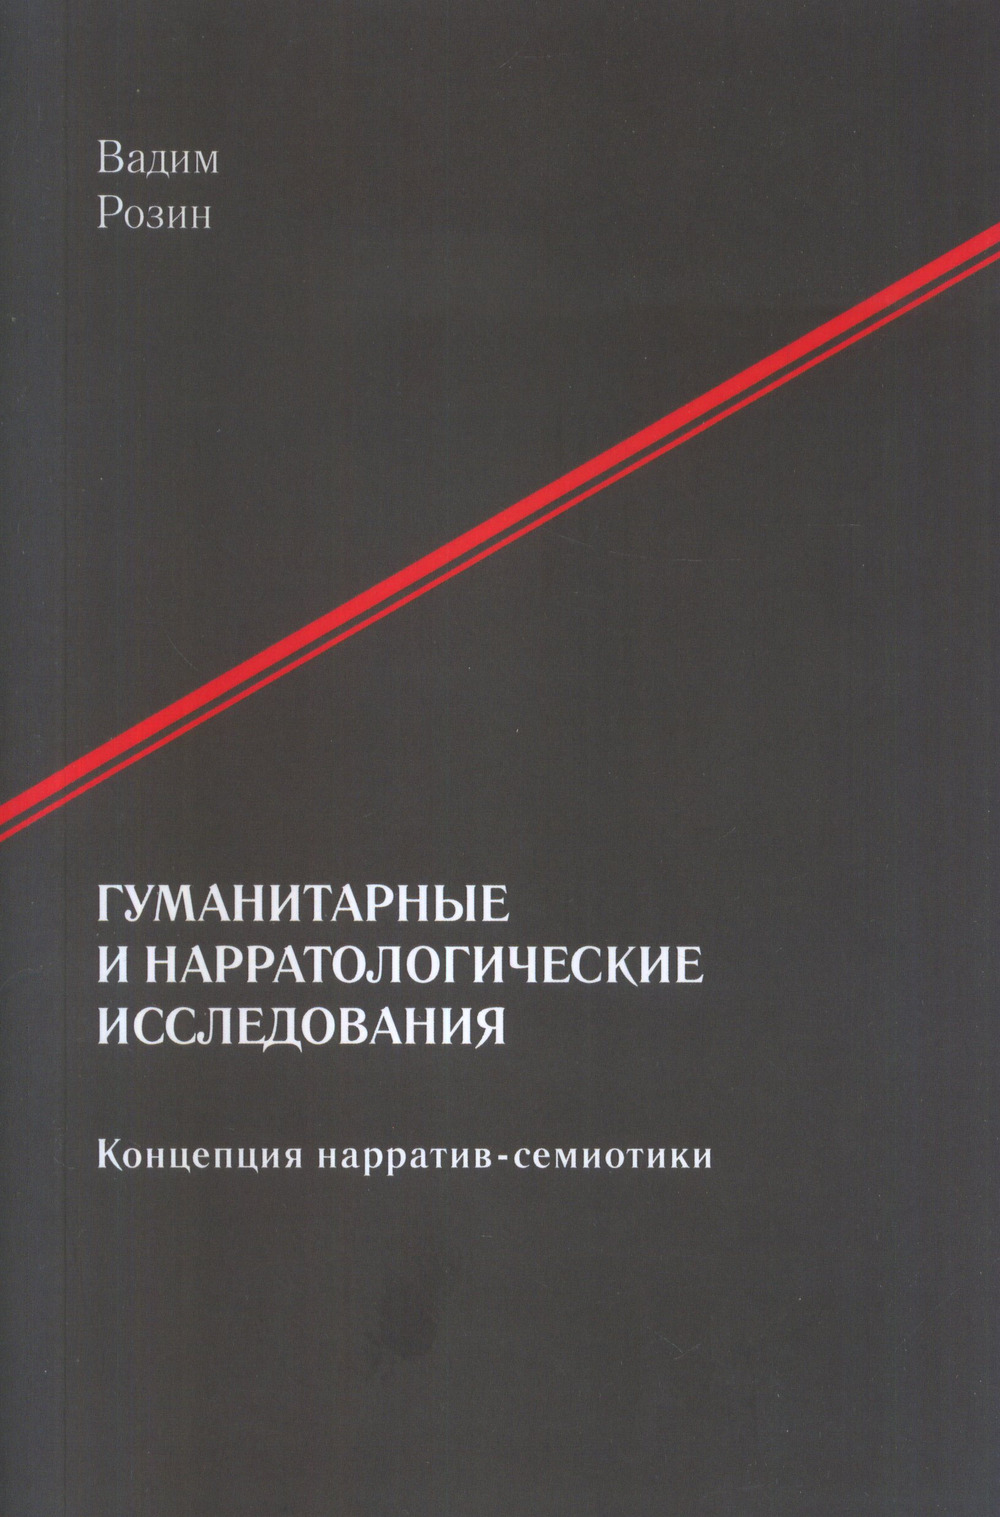 Розин В.М. Гуманитарные и нарратологические исследования. М.: URSS. 2023. 348 с. ISBN 978-5-91932-025-8.